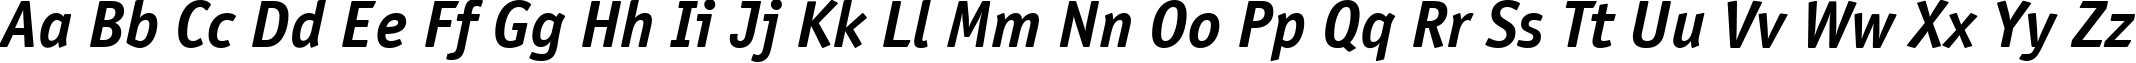 Пример написания английского алфавита шрифтом OfficinaSansCTT BoldItalic